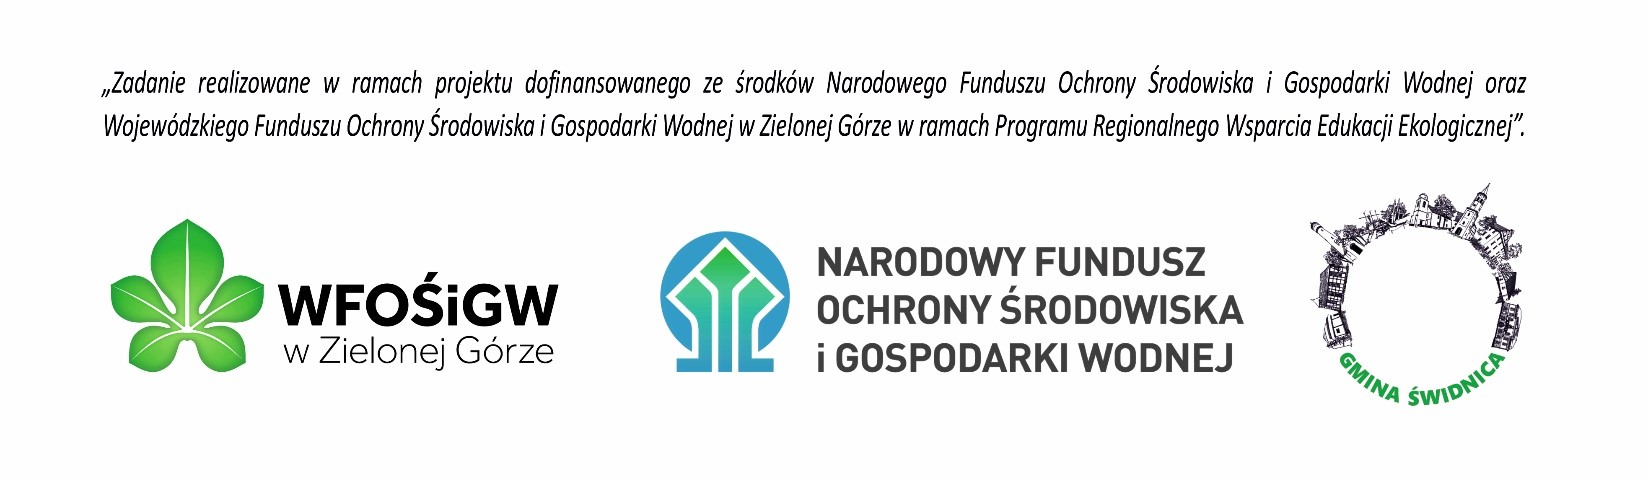 Logotypy do projektu finansowanego przez WFOŚiGW